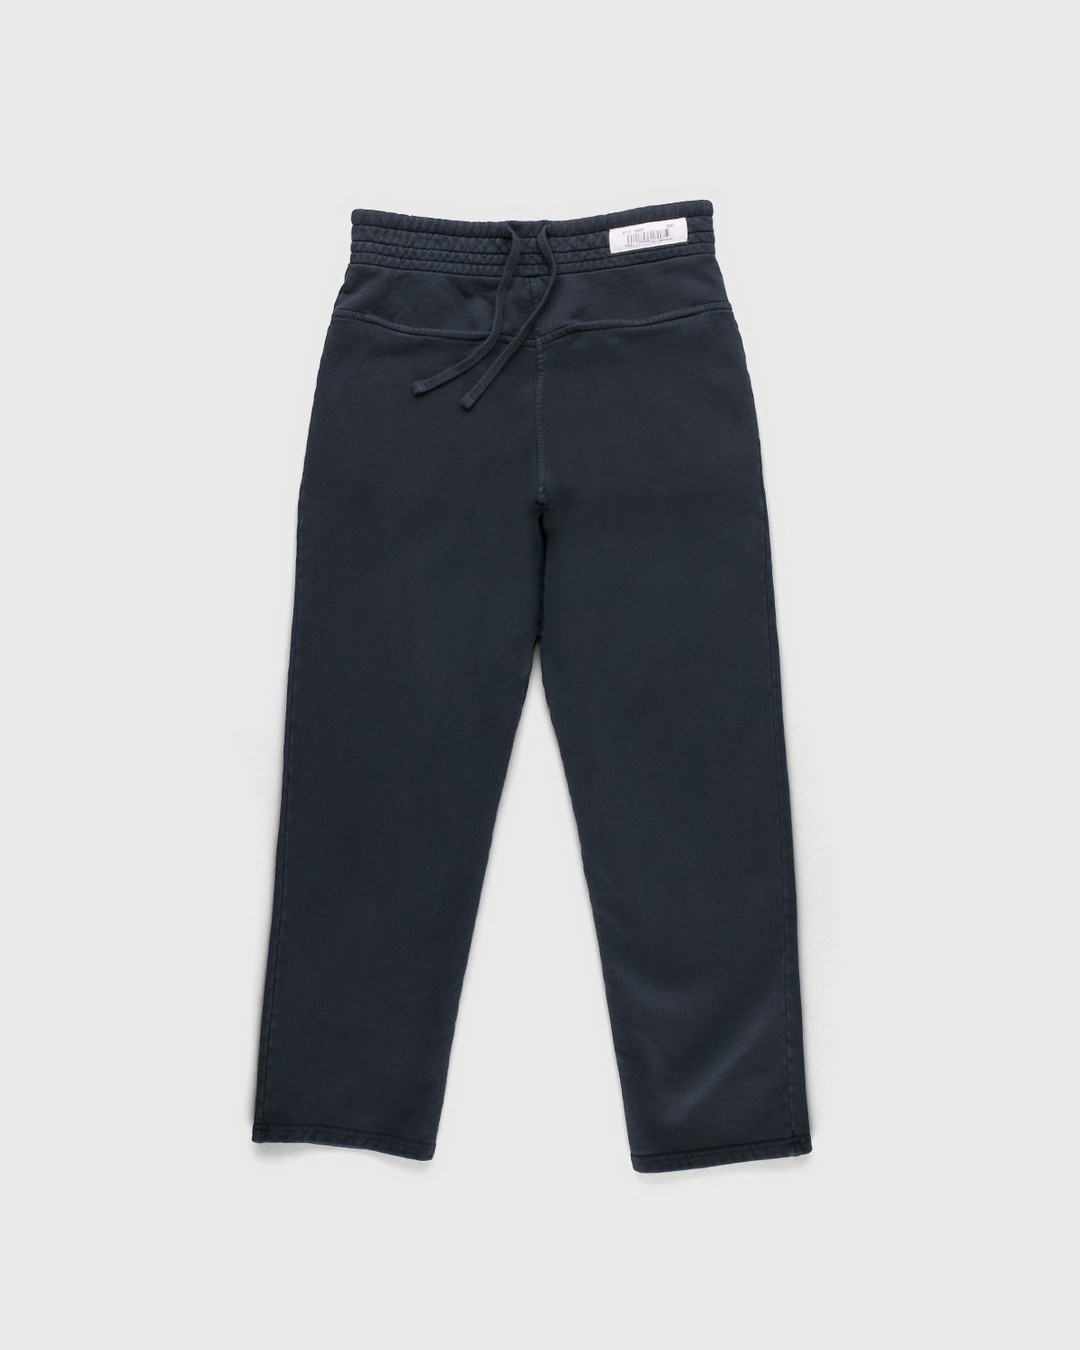 Darryl Brown – Gym Pants Vintage Black - Sweatpants - Black - Image 1